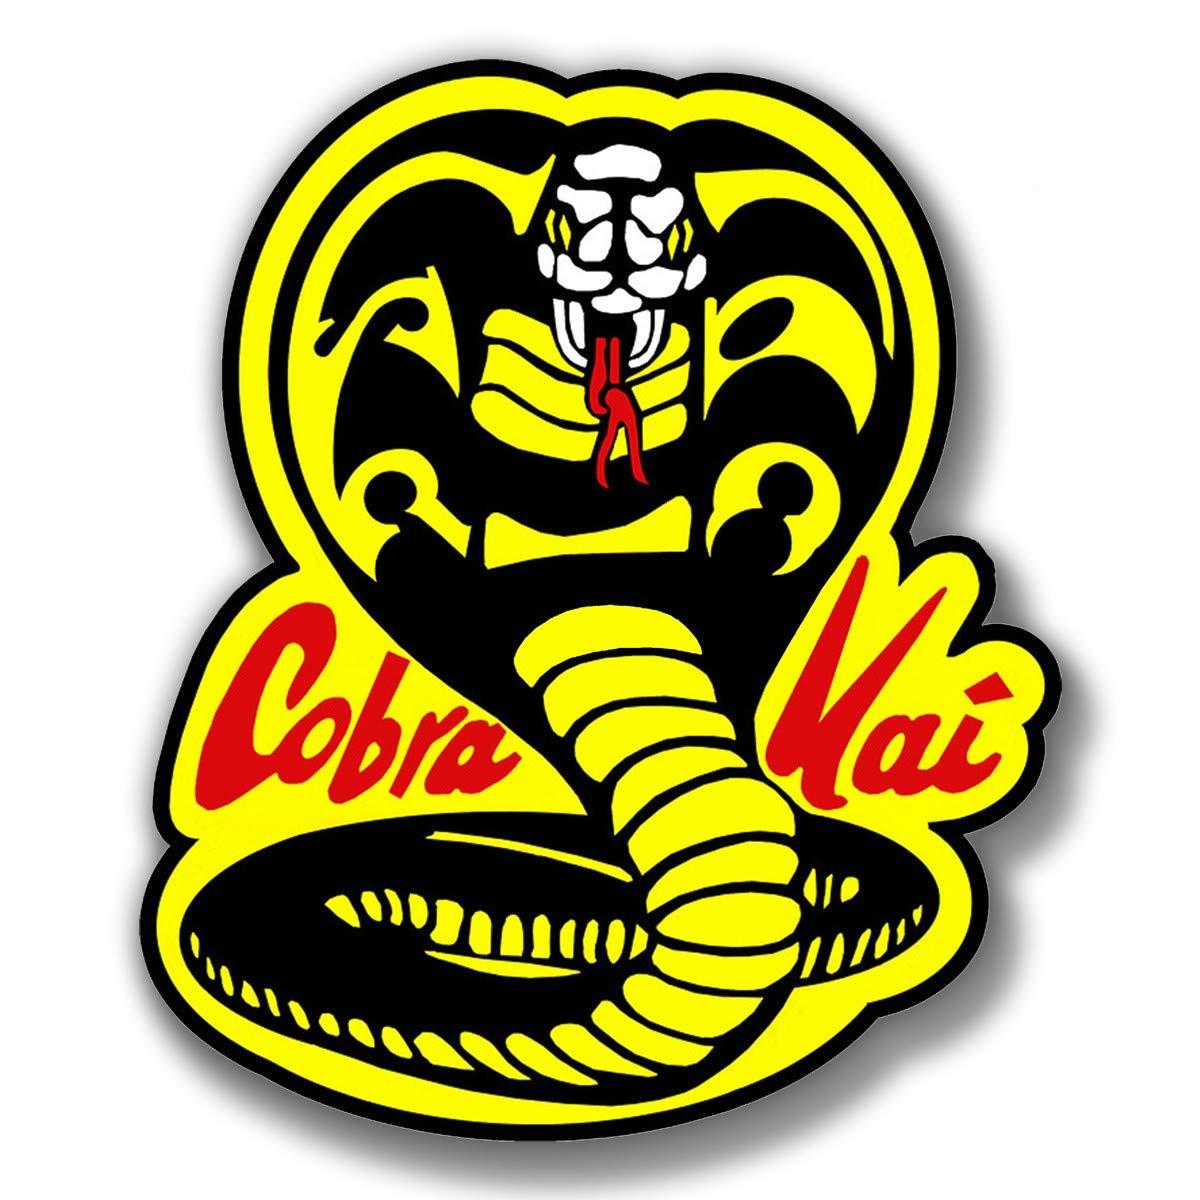 Kai Logo - Amazon.com: Cobra Kai Logo Karate Kid Movie Vinyl Sticker Decal ...